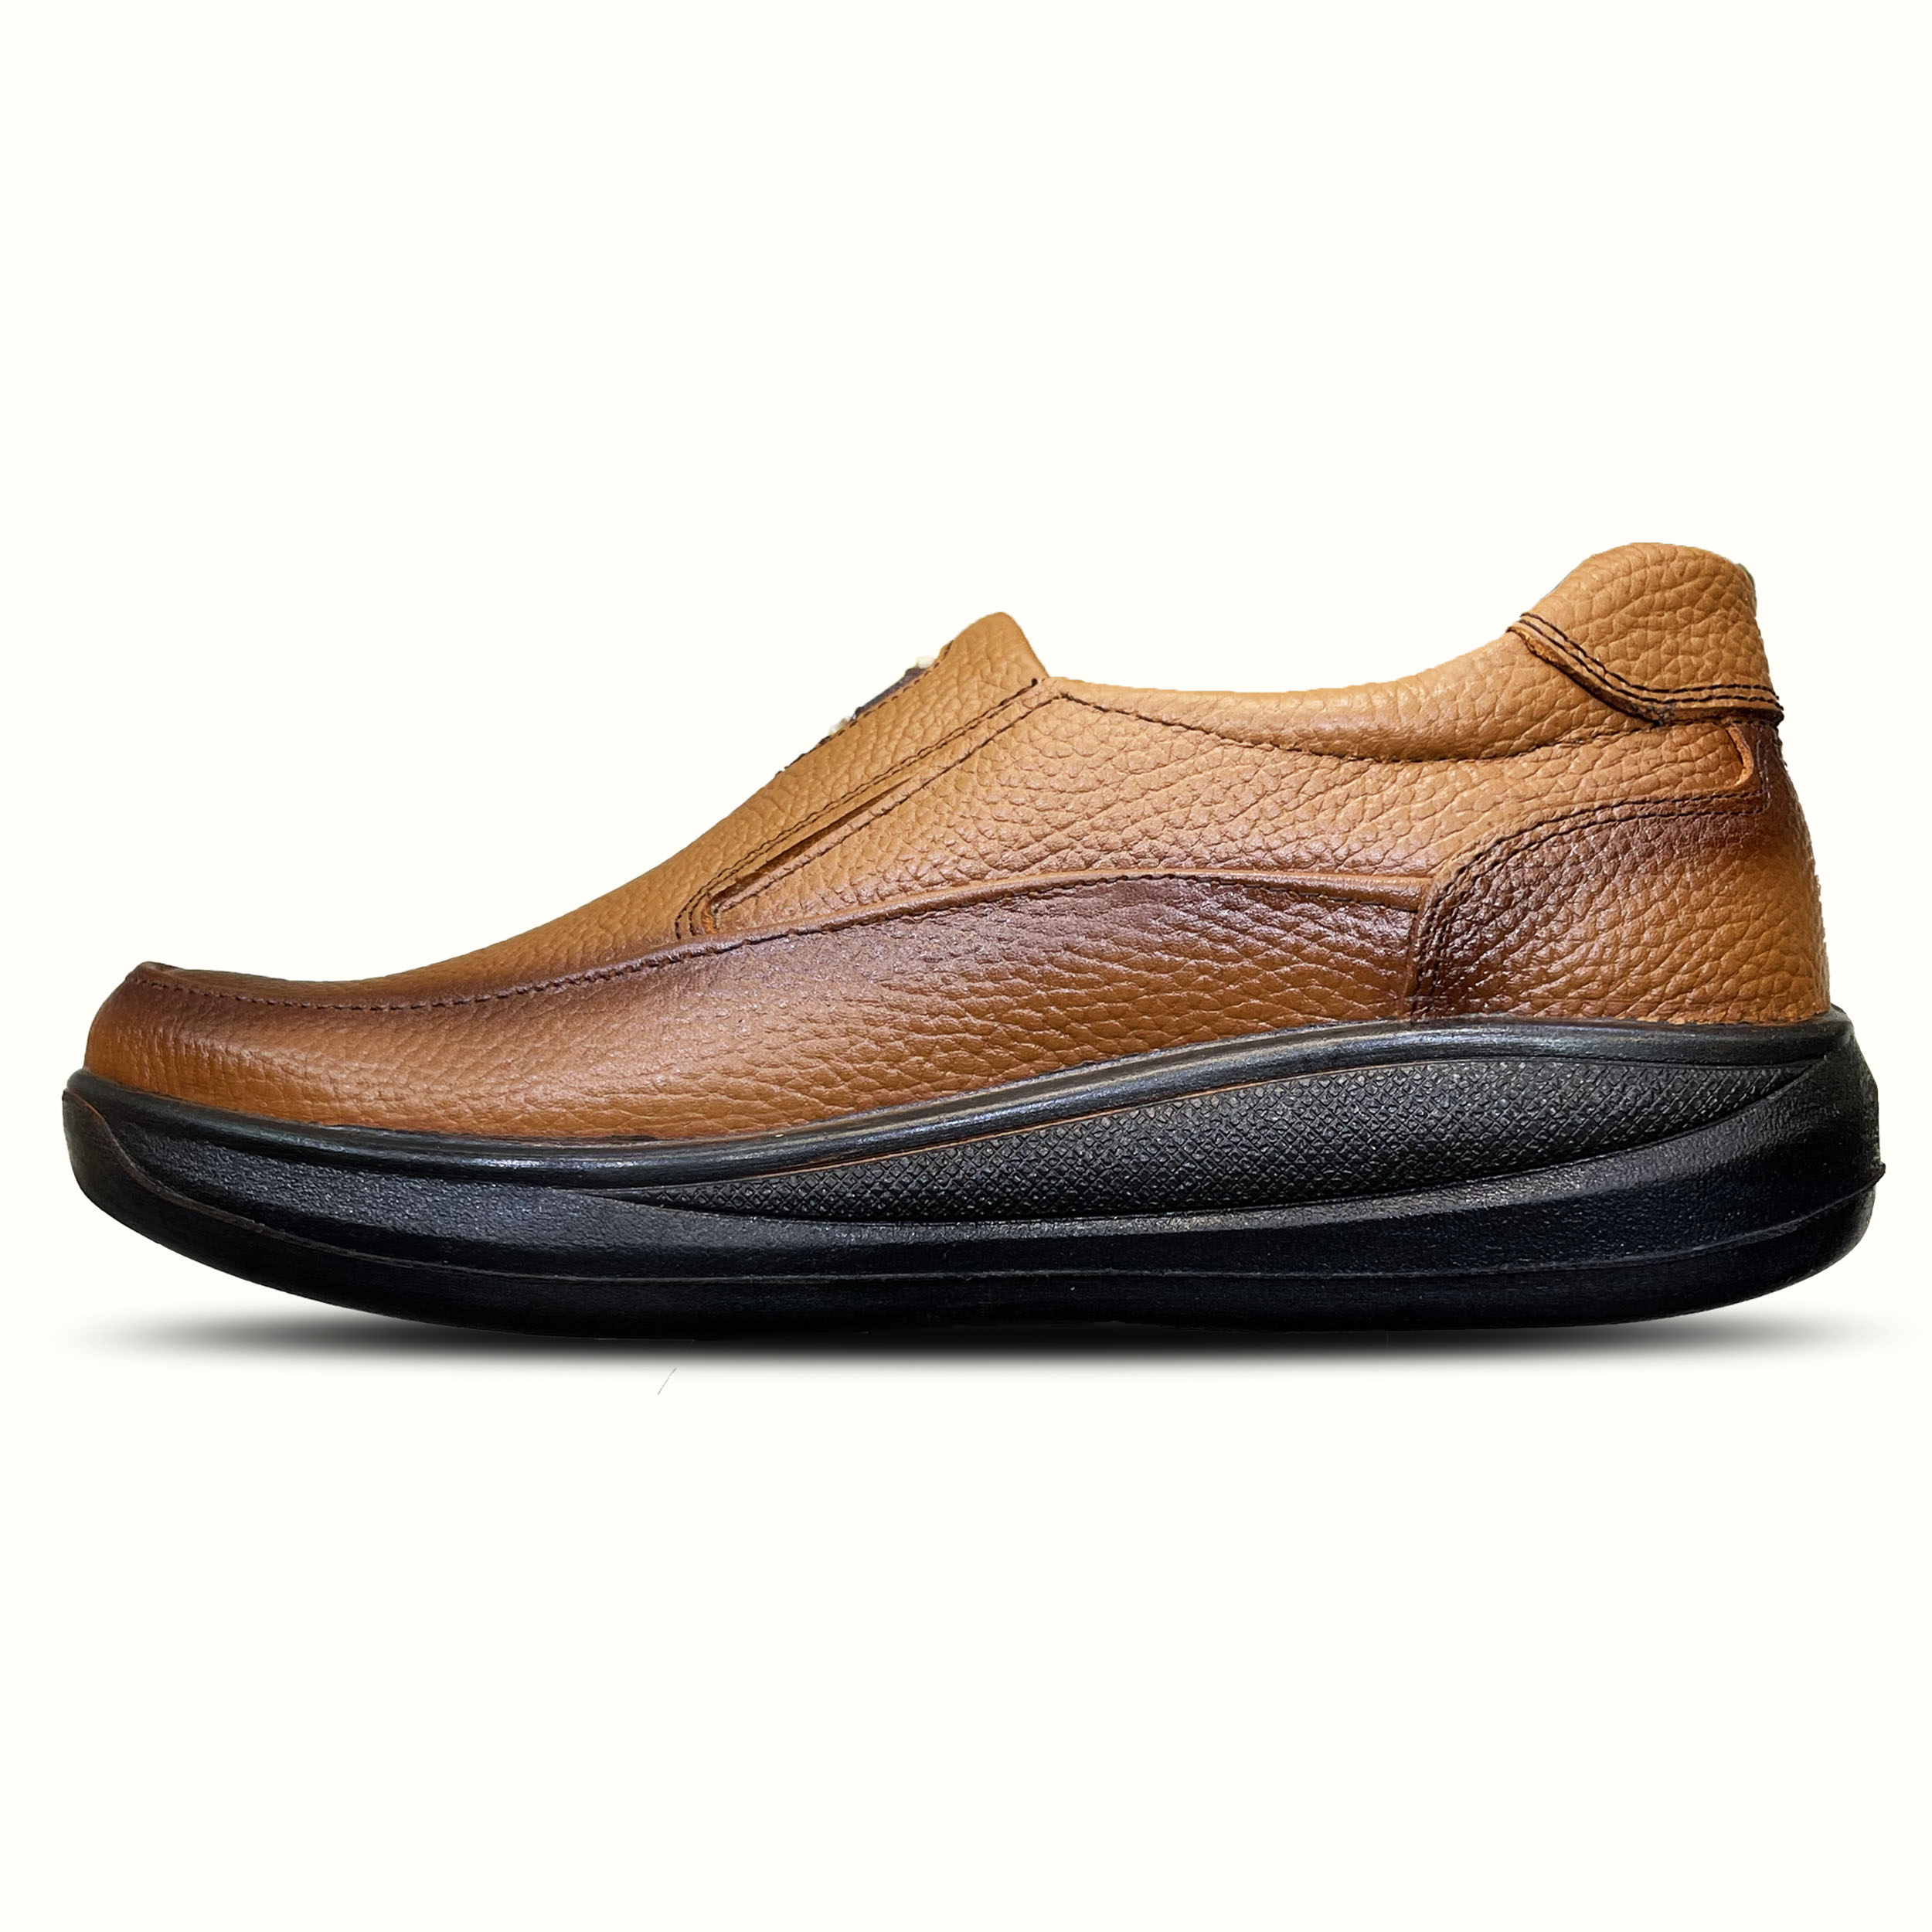 نکته خرید - قیمت روز  کفش طبی مردانه مدل چرم پوش کد Ce175 خرید